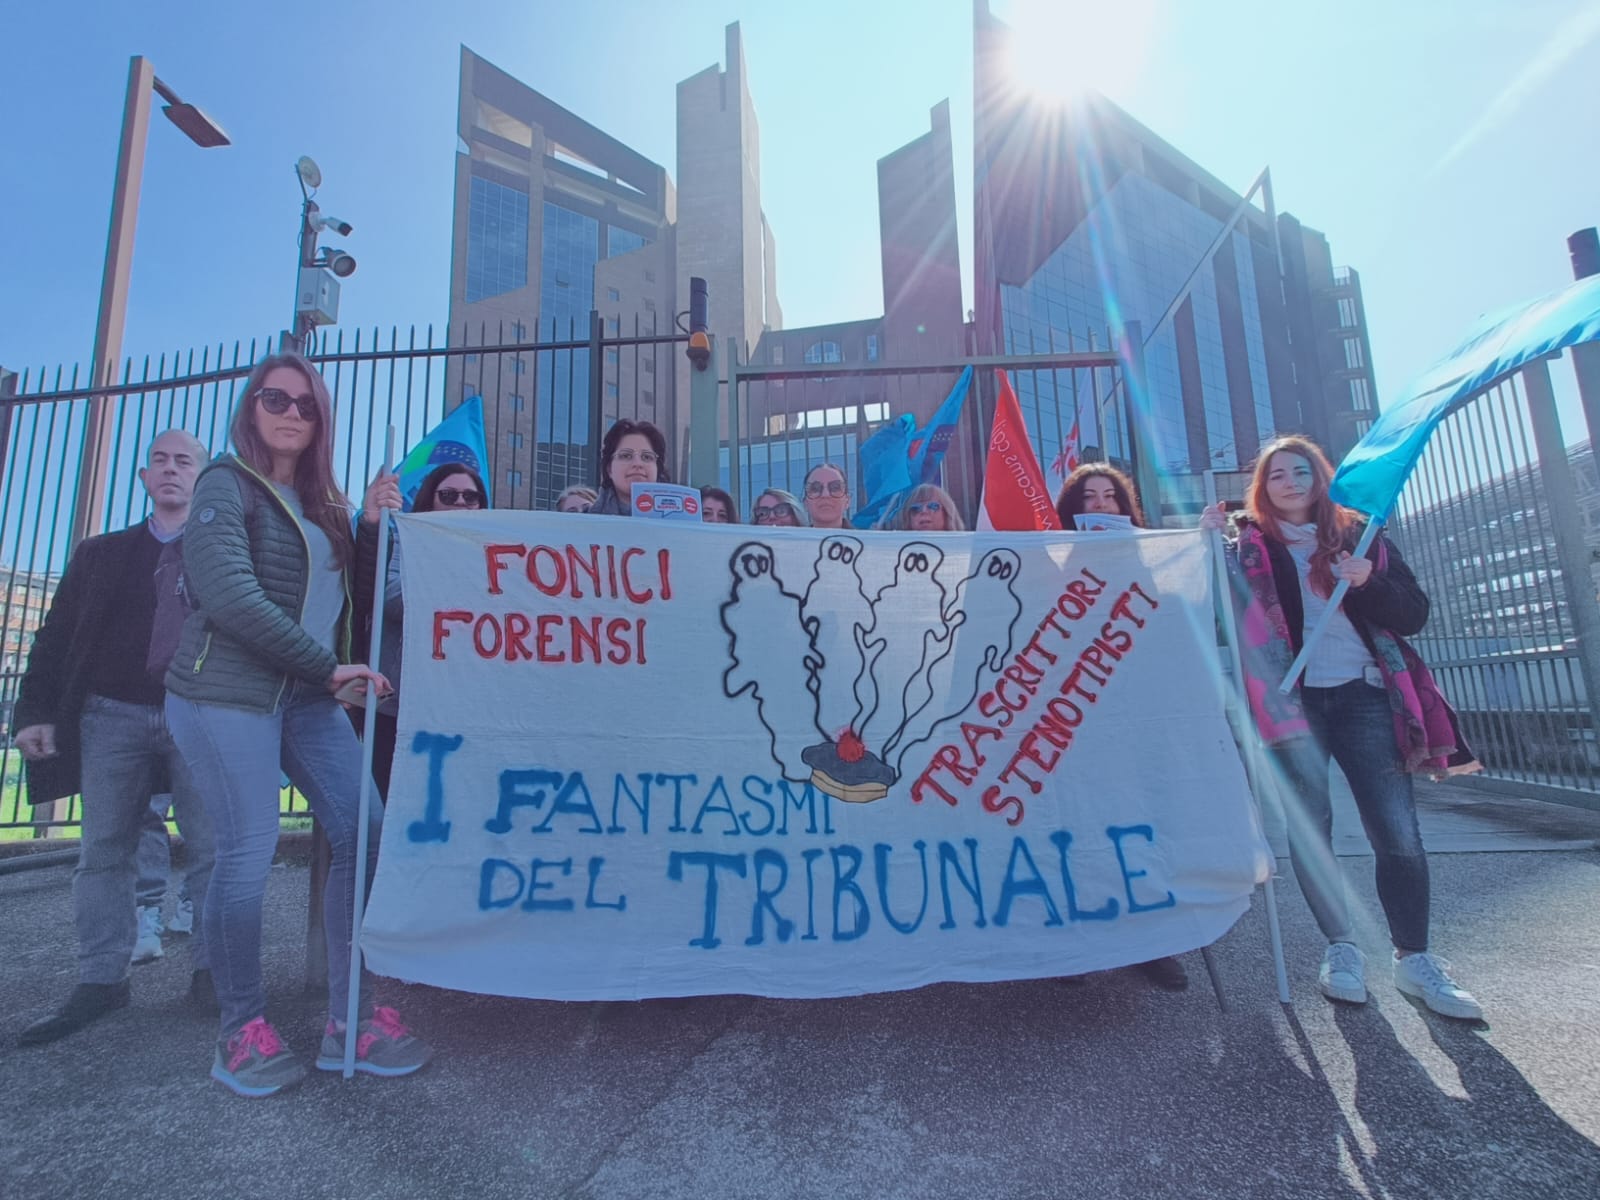 Fonici, Trascrittori e Stenotipisti forensi in sciopero: alta adesione in tutta Italia